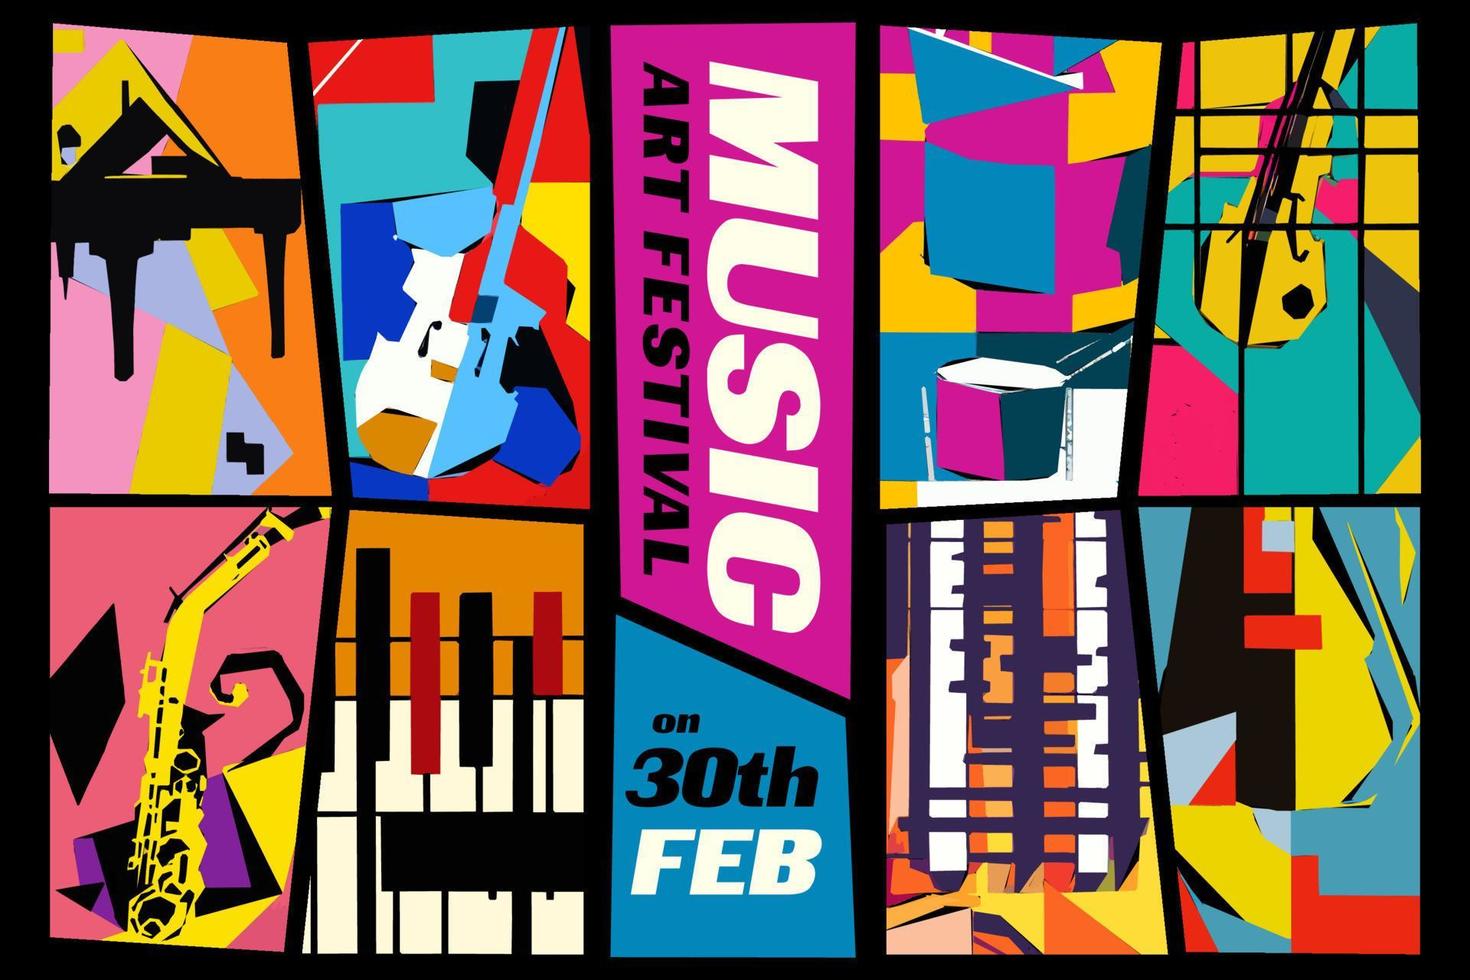 festival de música e arte. ilustração em vetor de um conjunto de fundos abstratos de jazz com instrumentos musicais. guitarra, piano, saxofone e violino.